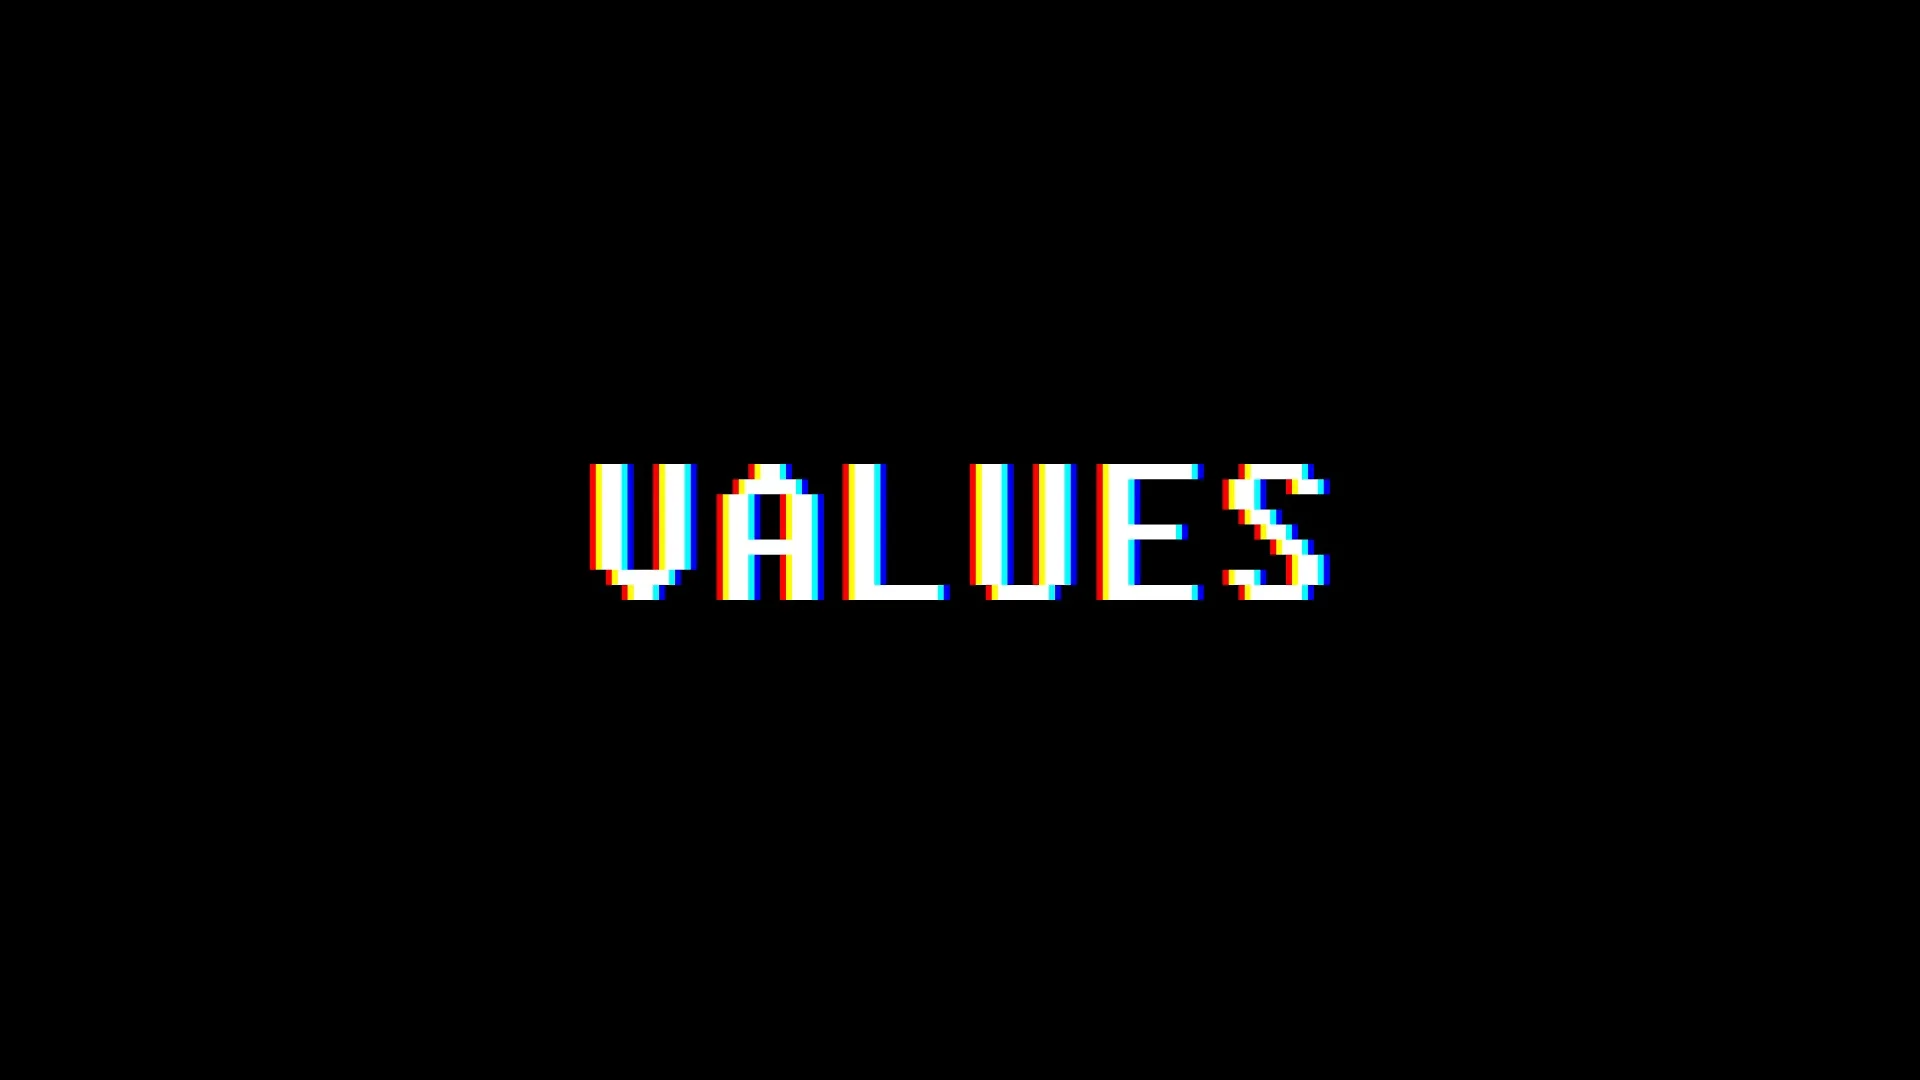 retro video game values